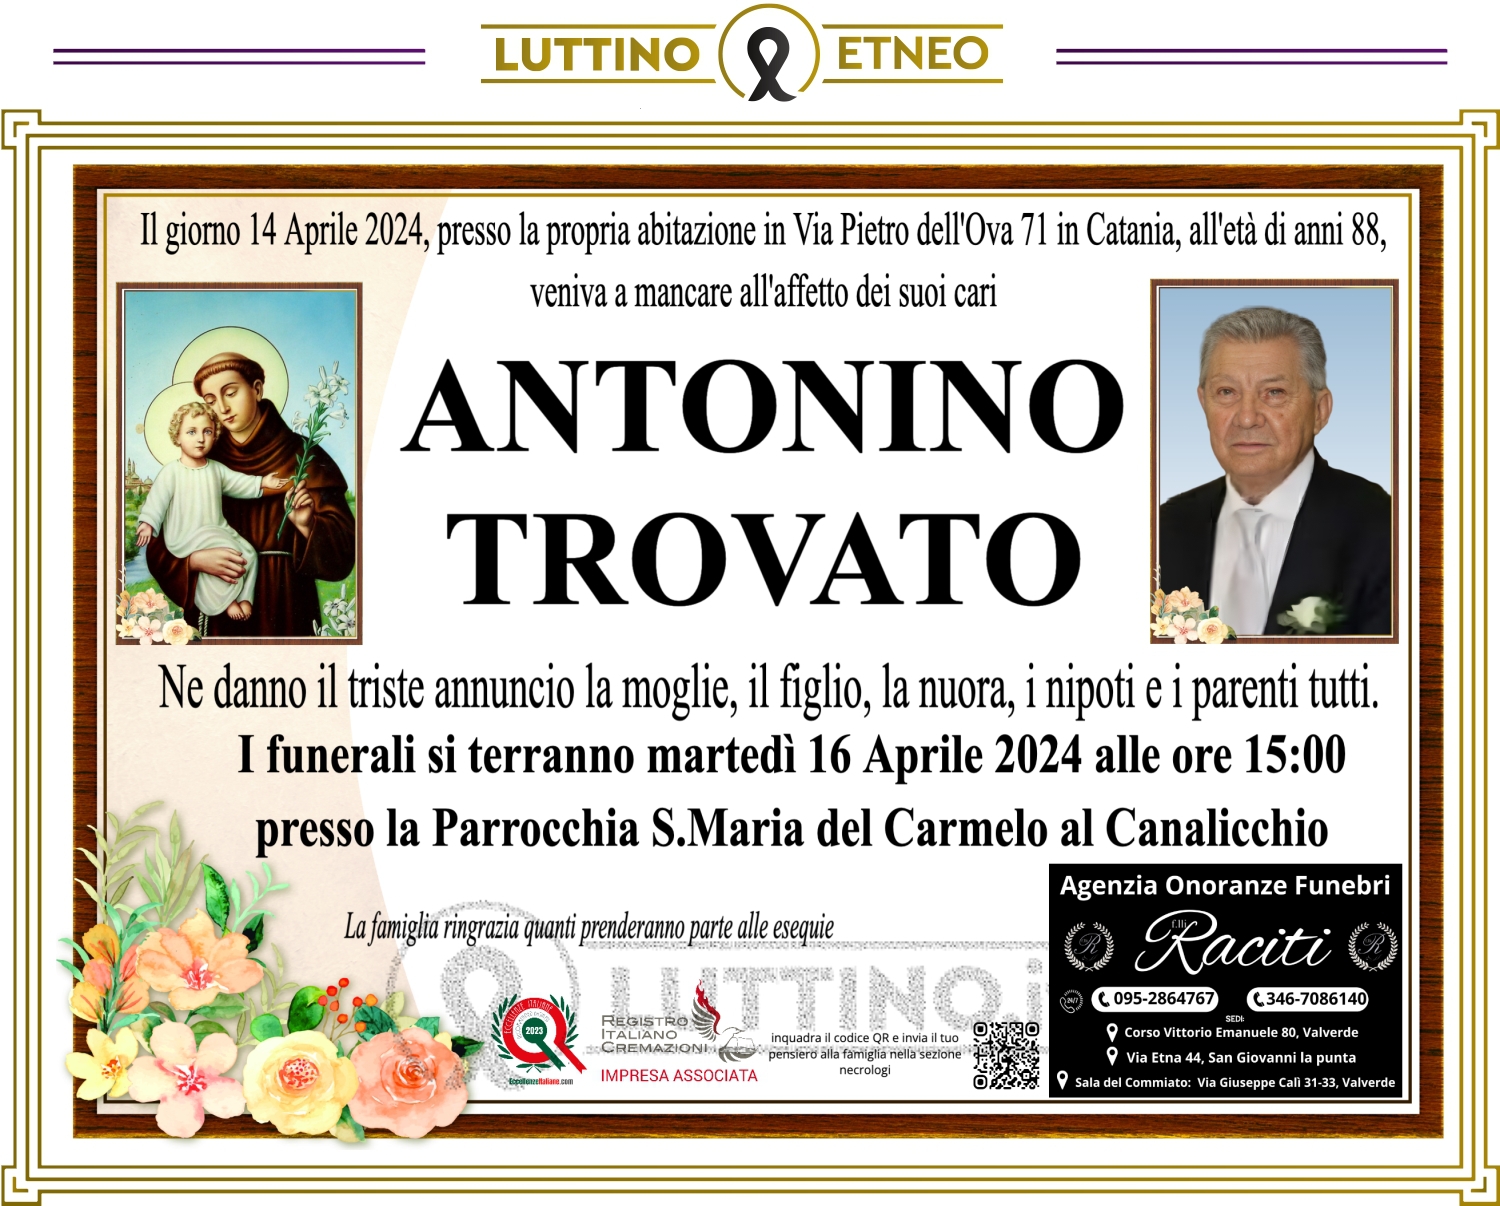 Antonino Trovato